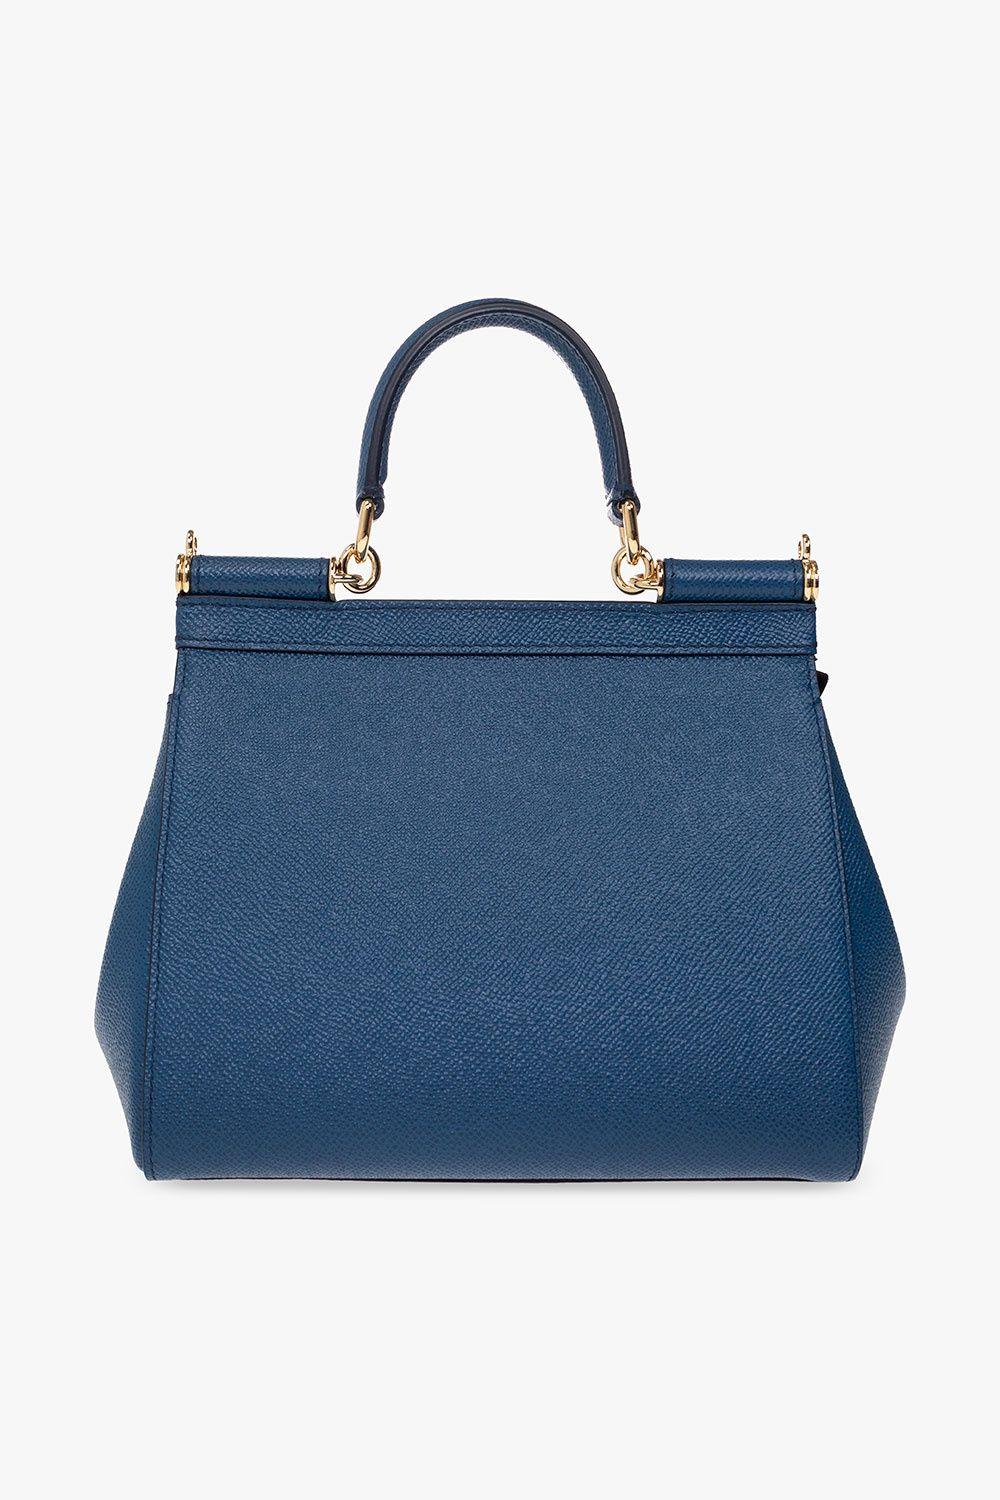 Dolce & Gabbana Small Sicily Leather Shoulder Bag - Blue